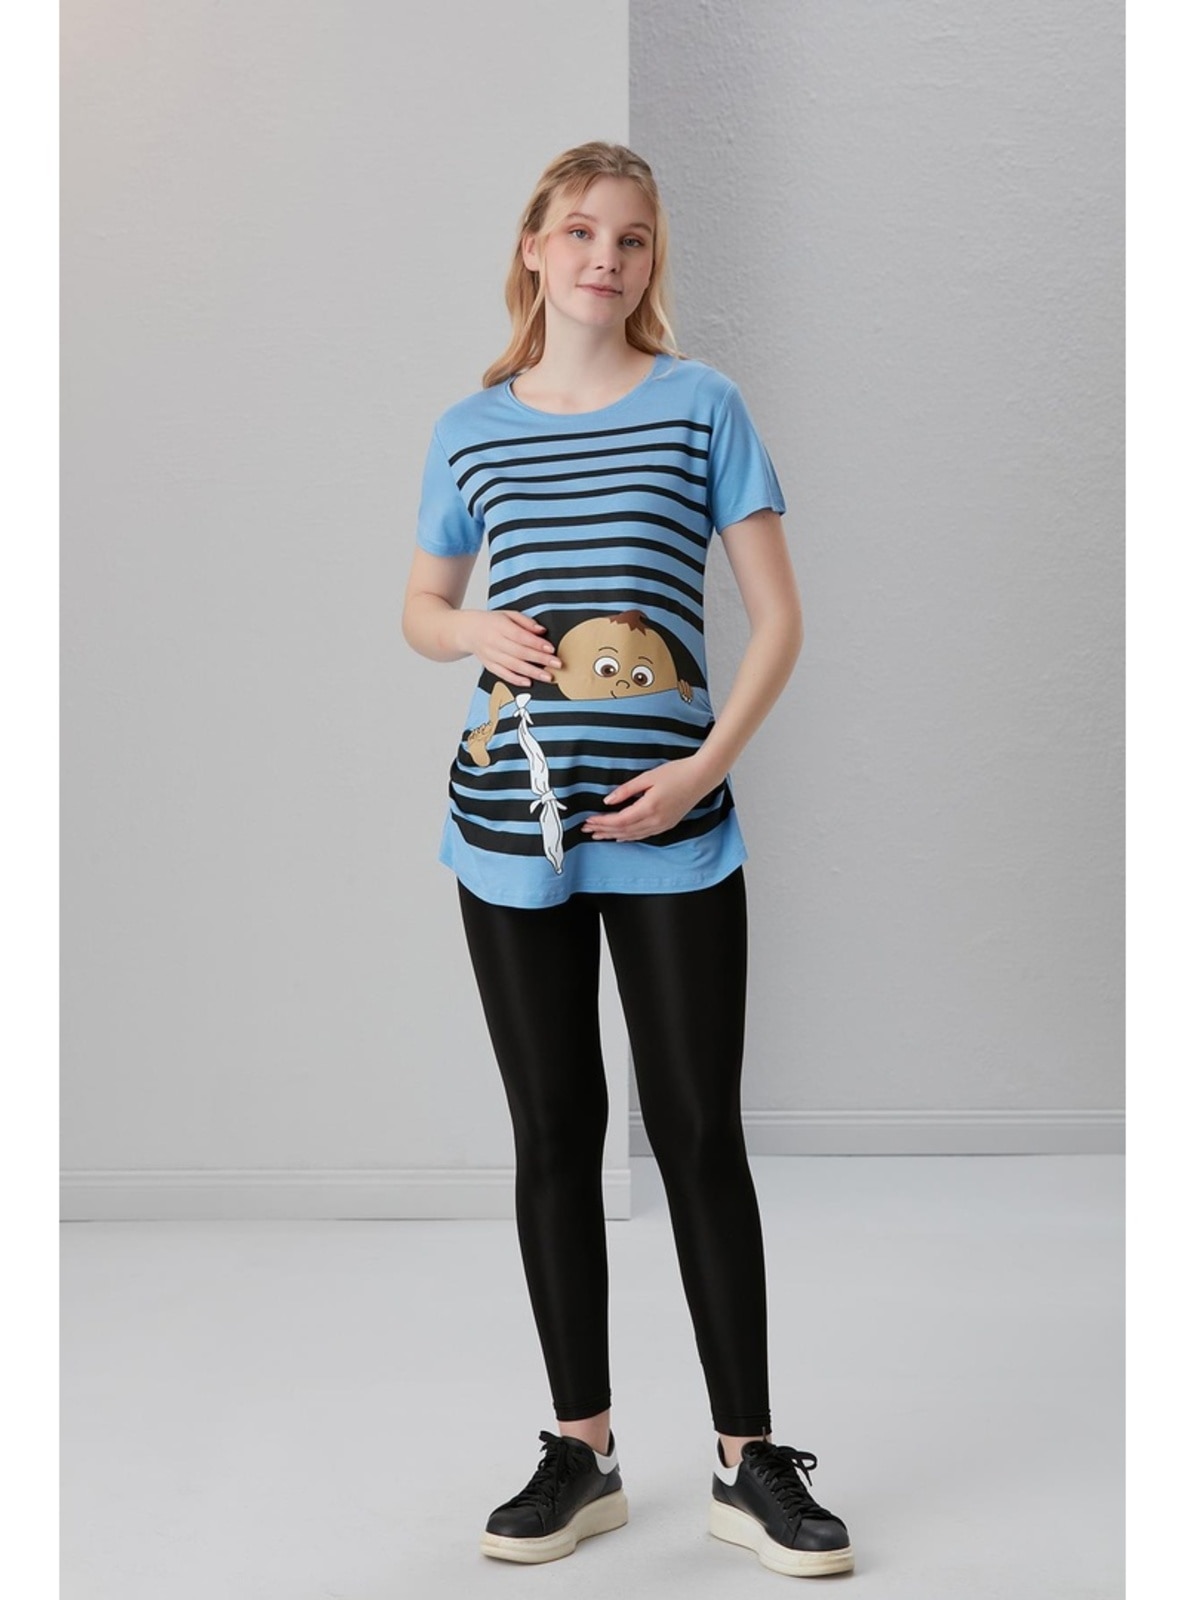  - Maternity Tunic / T-Shirt